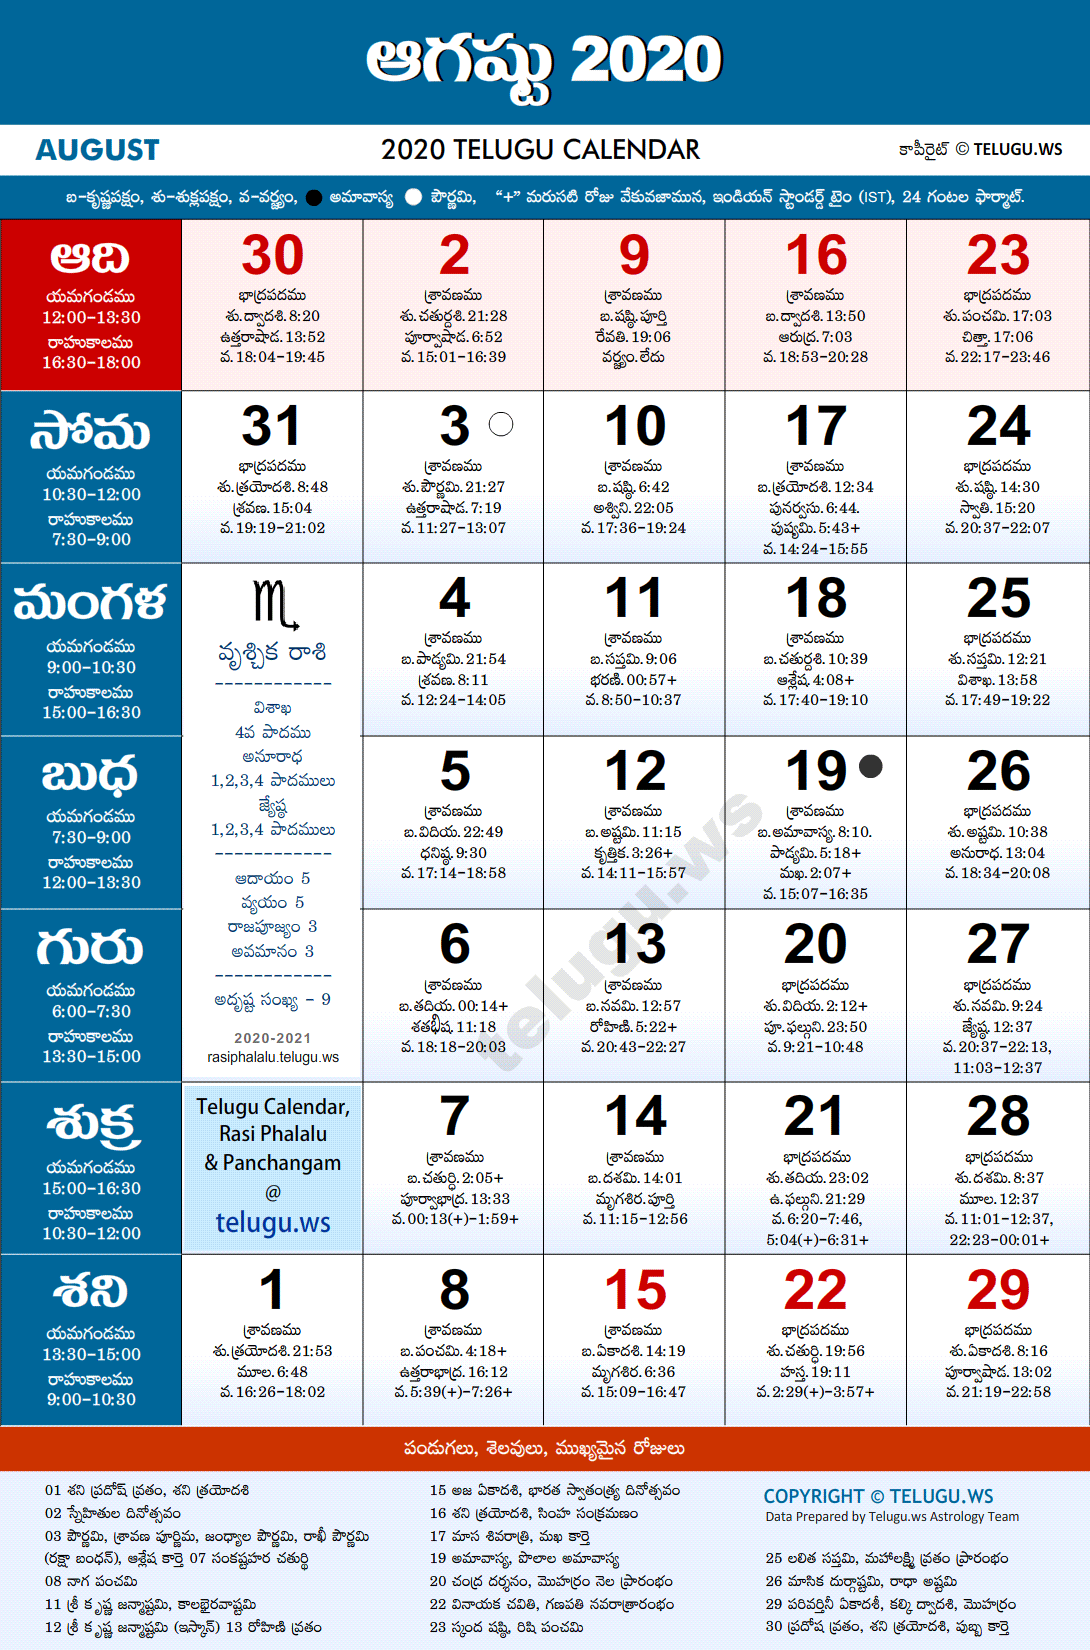 Telugu Calendar 2020 August Festivals and Holidays